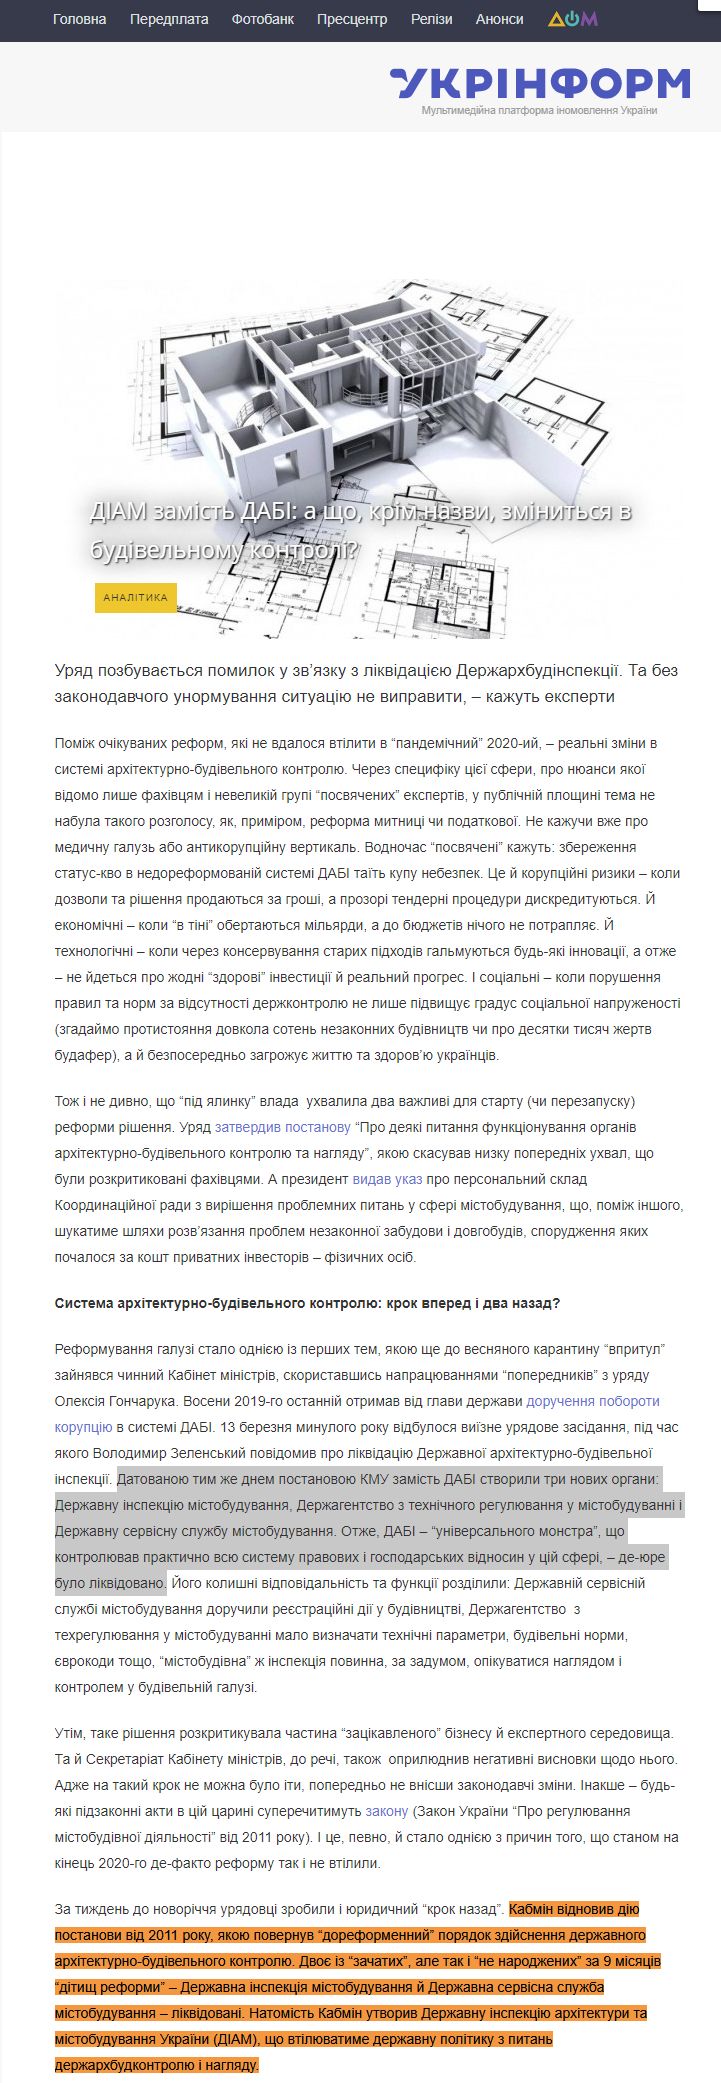 https://www.ukrinform.ua/rubric-economy/3165884-diam-zamist-dabi-a-so-krim-nazvi-zminitsa-v-budivelnomu-kontroli.html